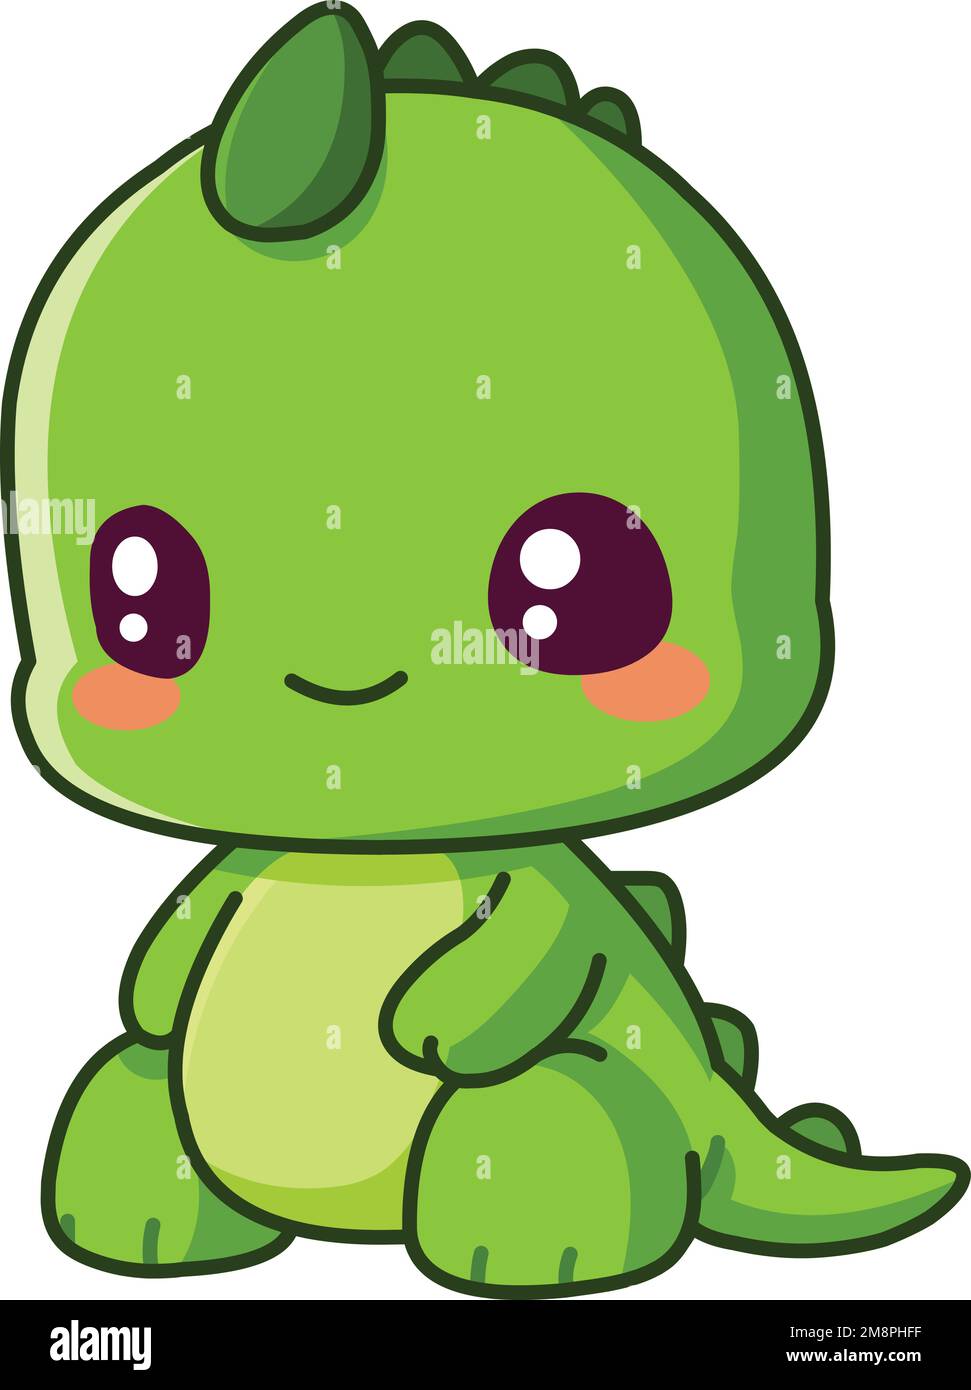 Un petit dinosaure vert souriant de dino, assis dans un style chibi Illustration de Vecteur